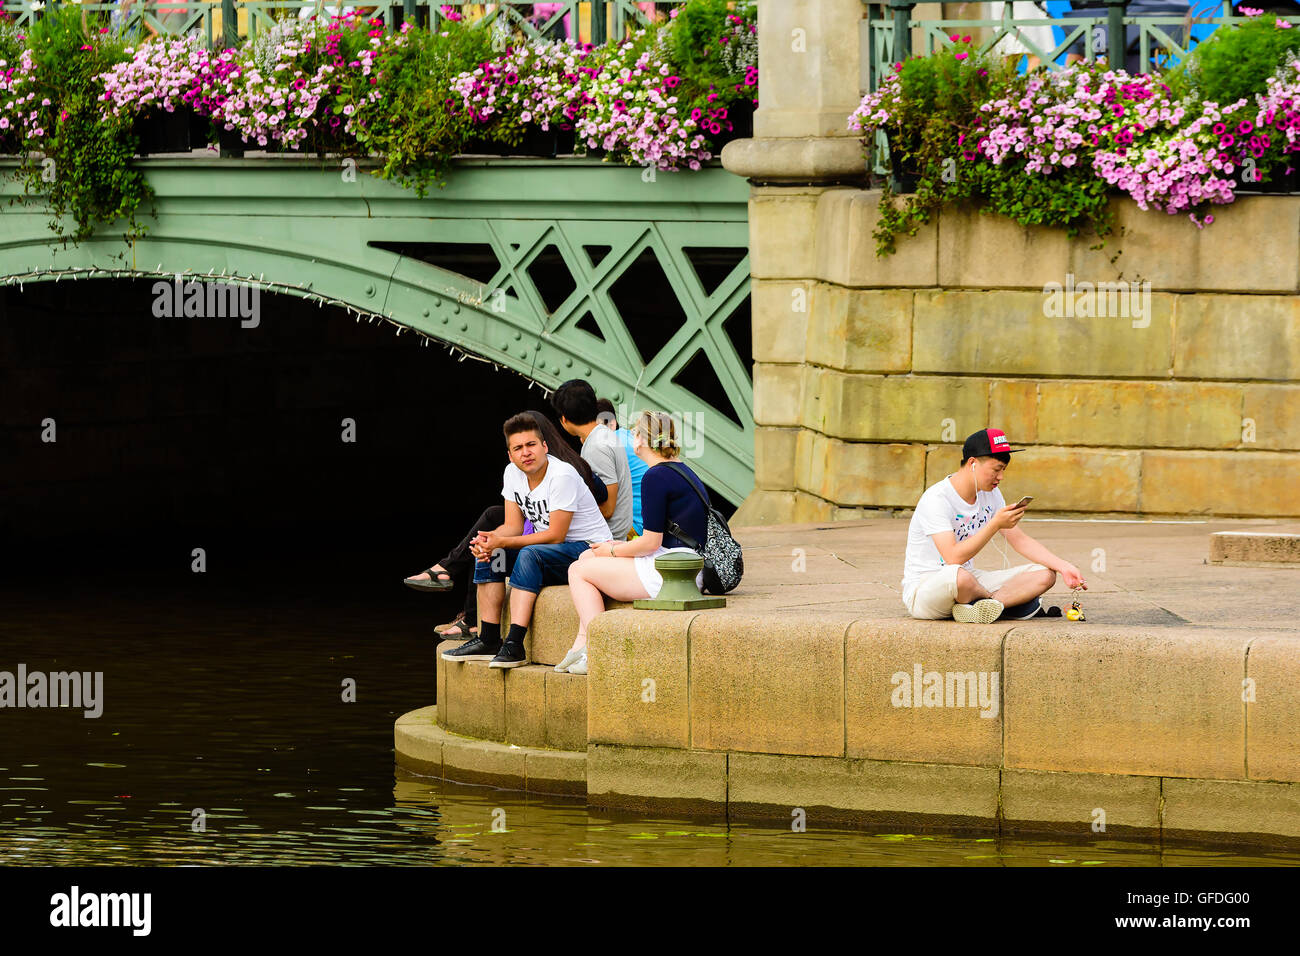 Göteborg, Schweden - 25. Juli 2016: Echte Menschen im Alltag. Junge Erwachsene Personen sitzen in der Nähe Wasser unter einer Brücke. Ein p Stockfoto